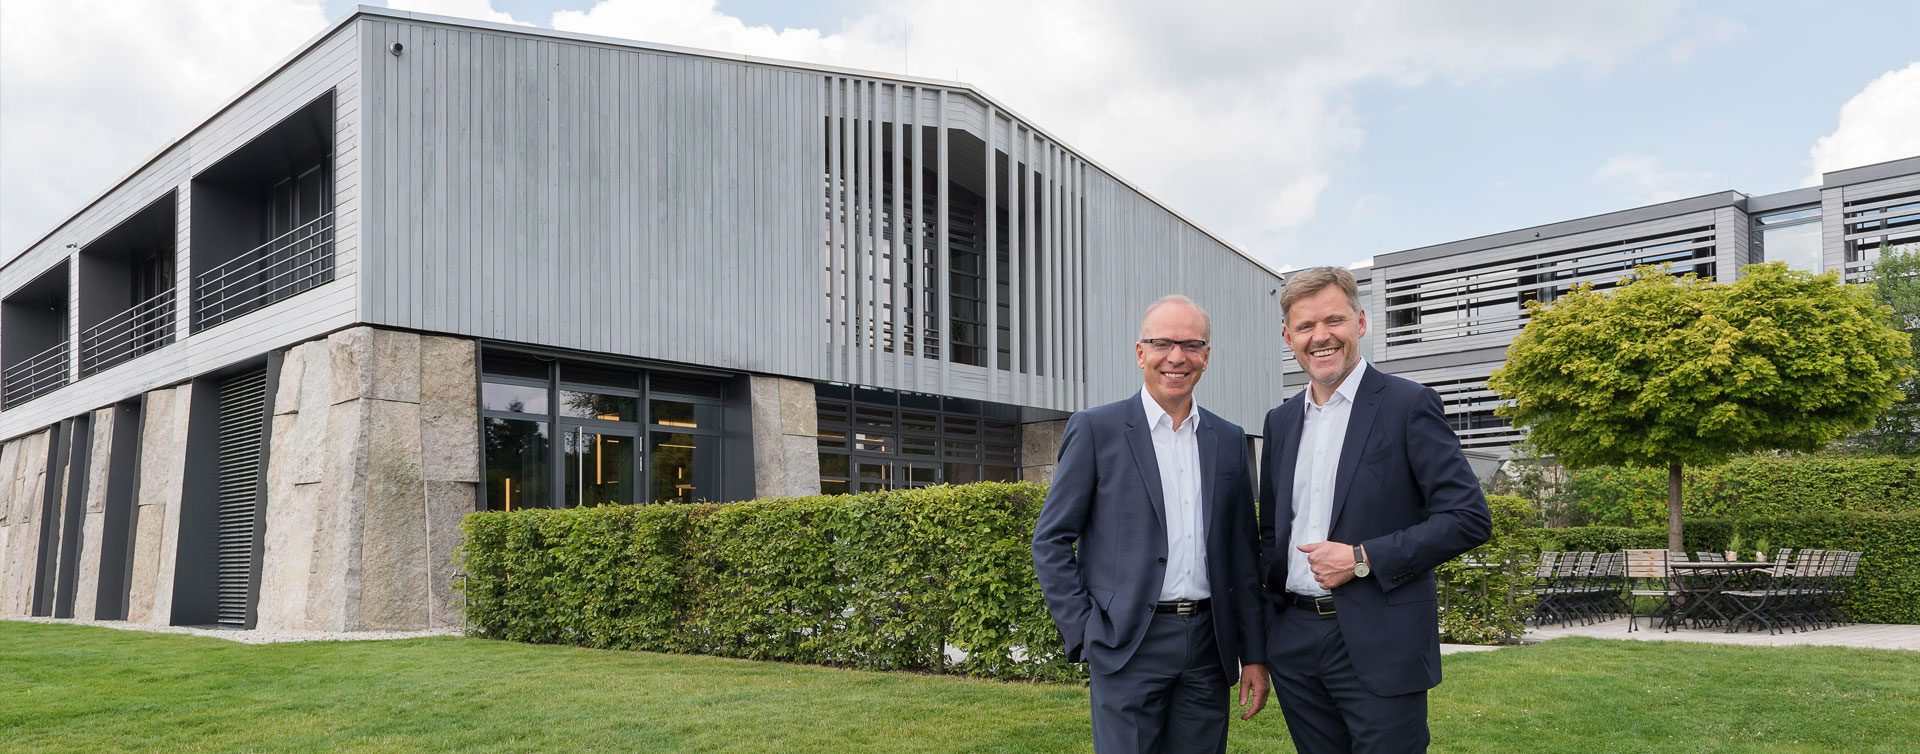 IGZ am Firmensitz in Falkenberg mit den Geschäftsführern Gropengießer und Zrenner